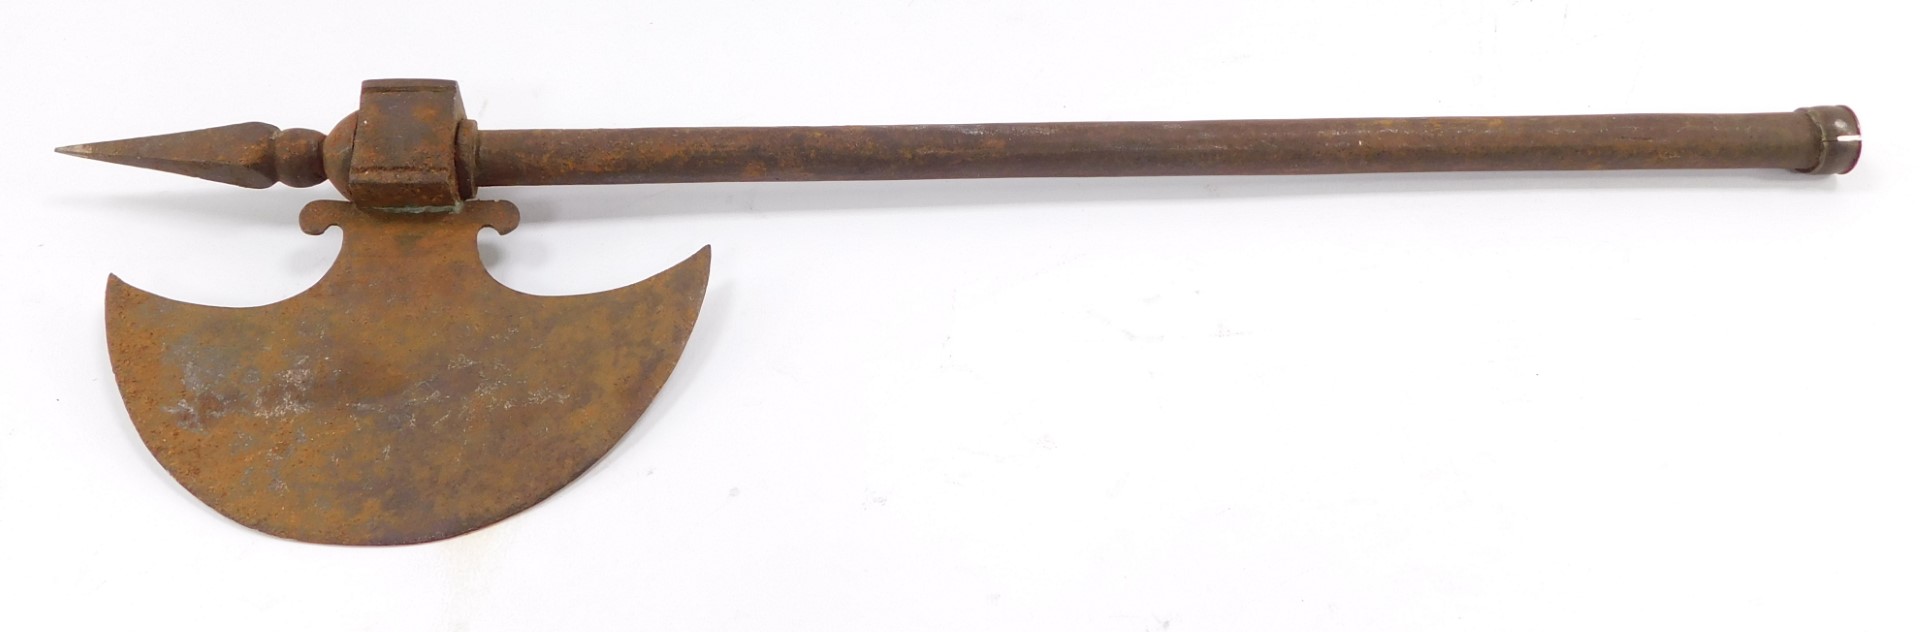 A metal axe.